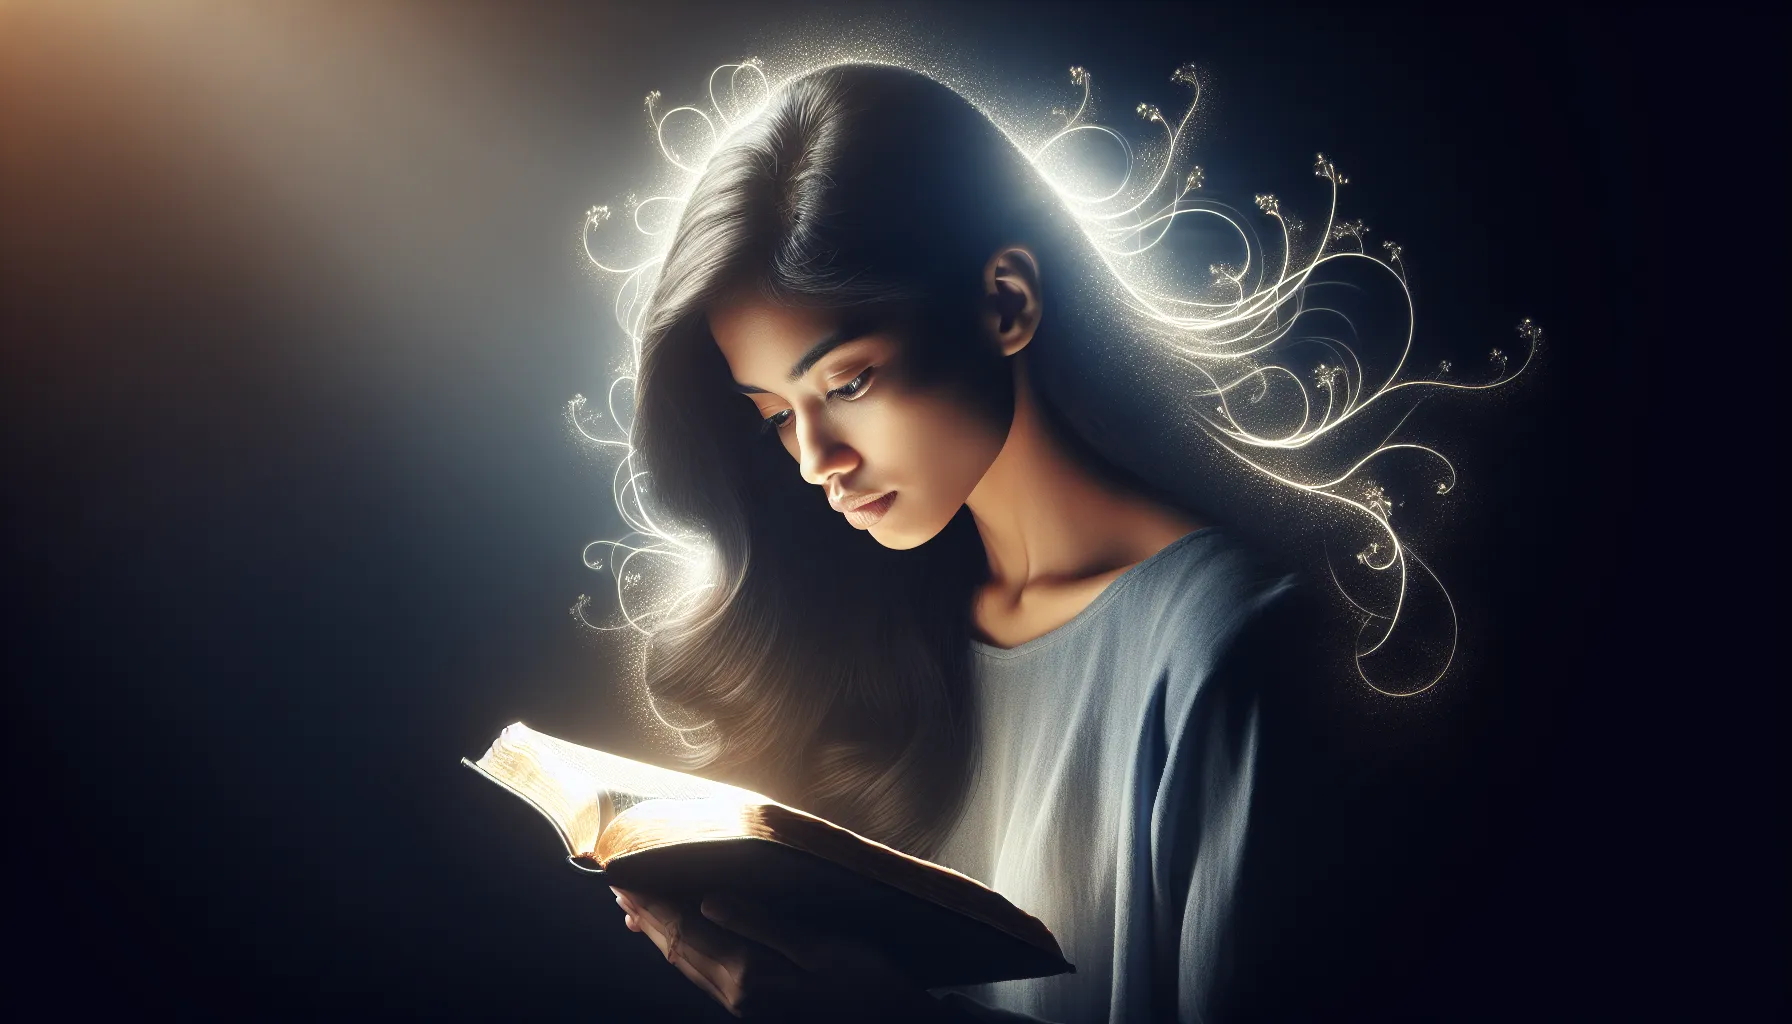 Imagen de una persona leyendo la Biblia y meditando